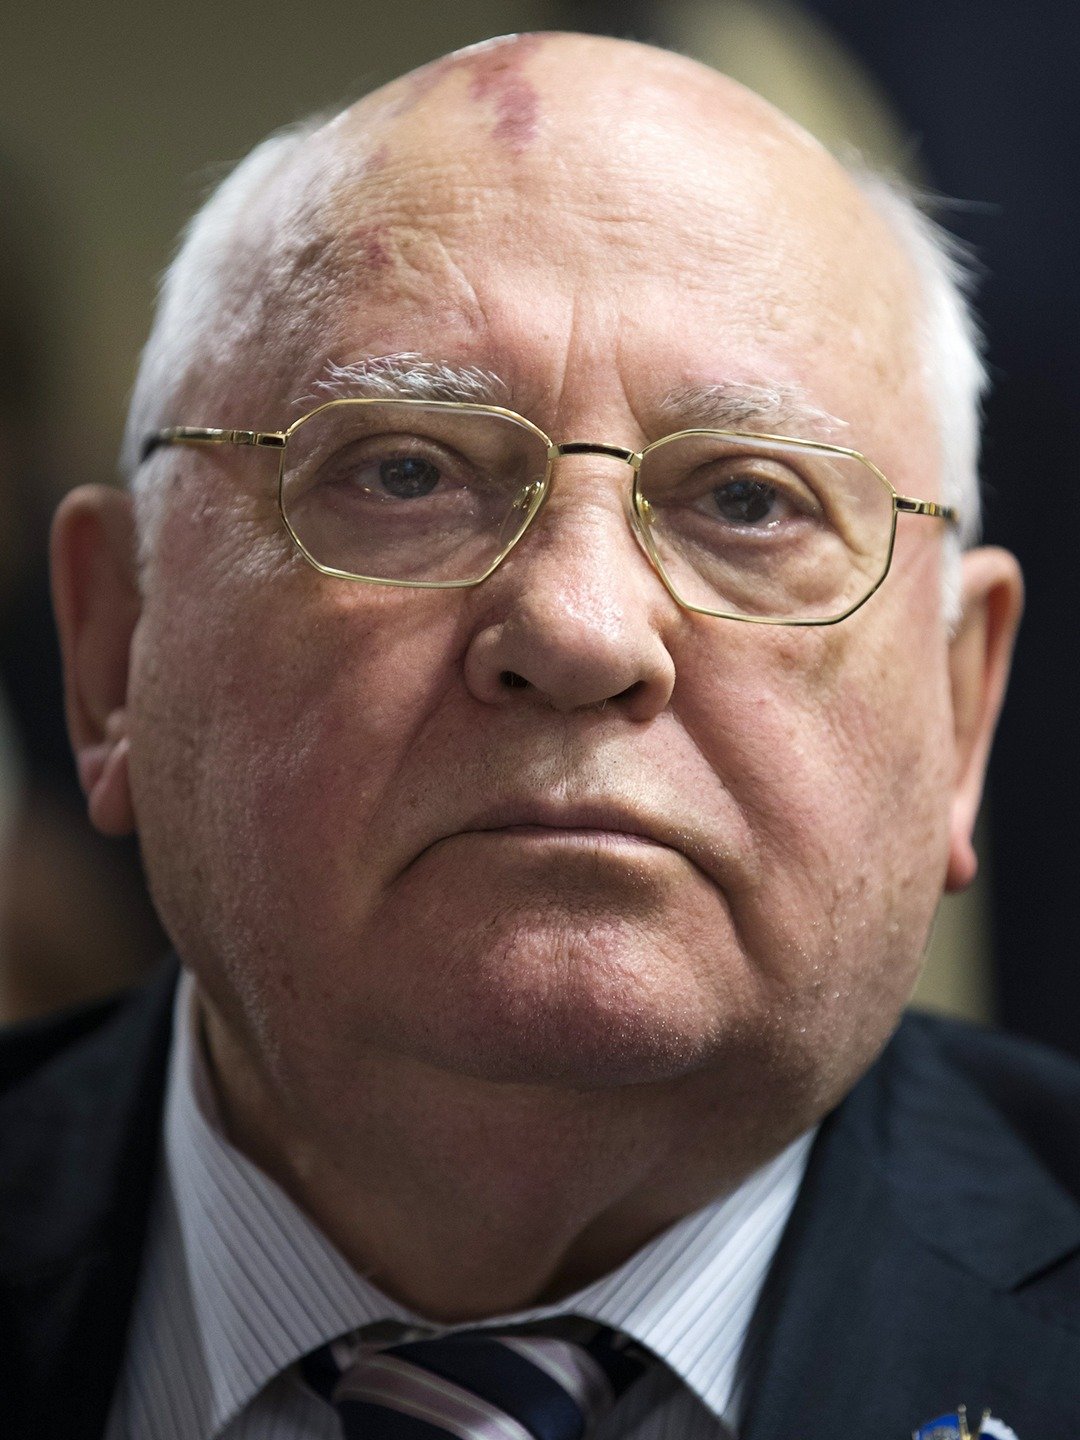 mikhail gorbachev portrait